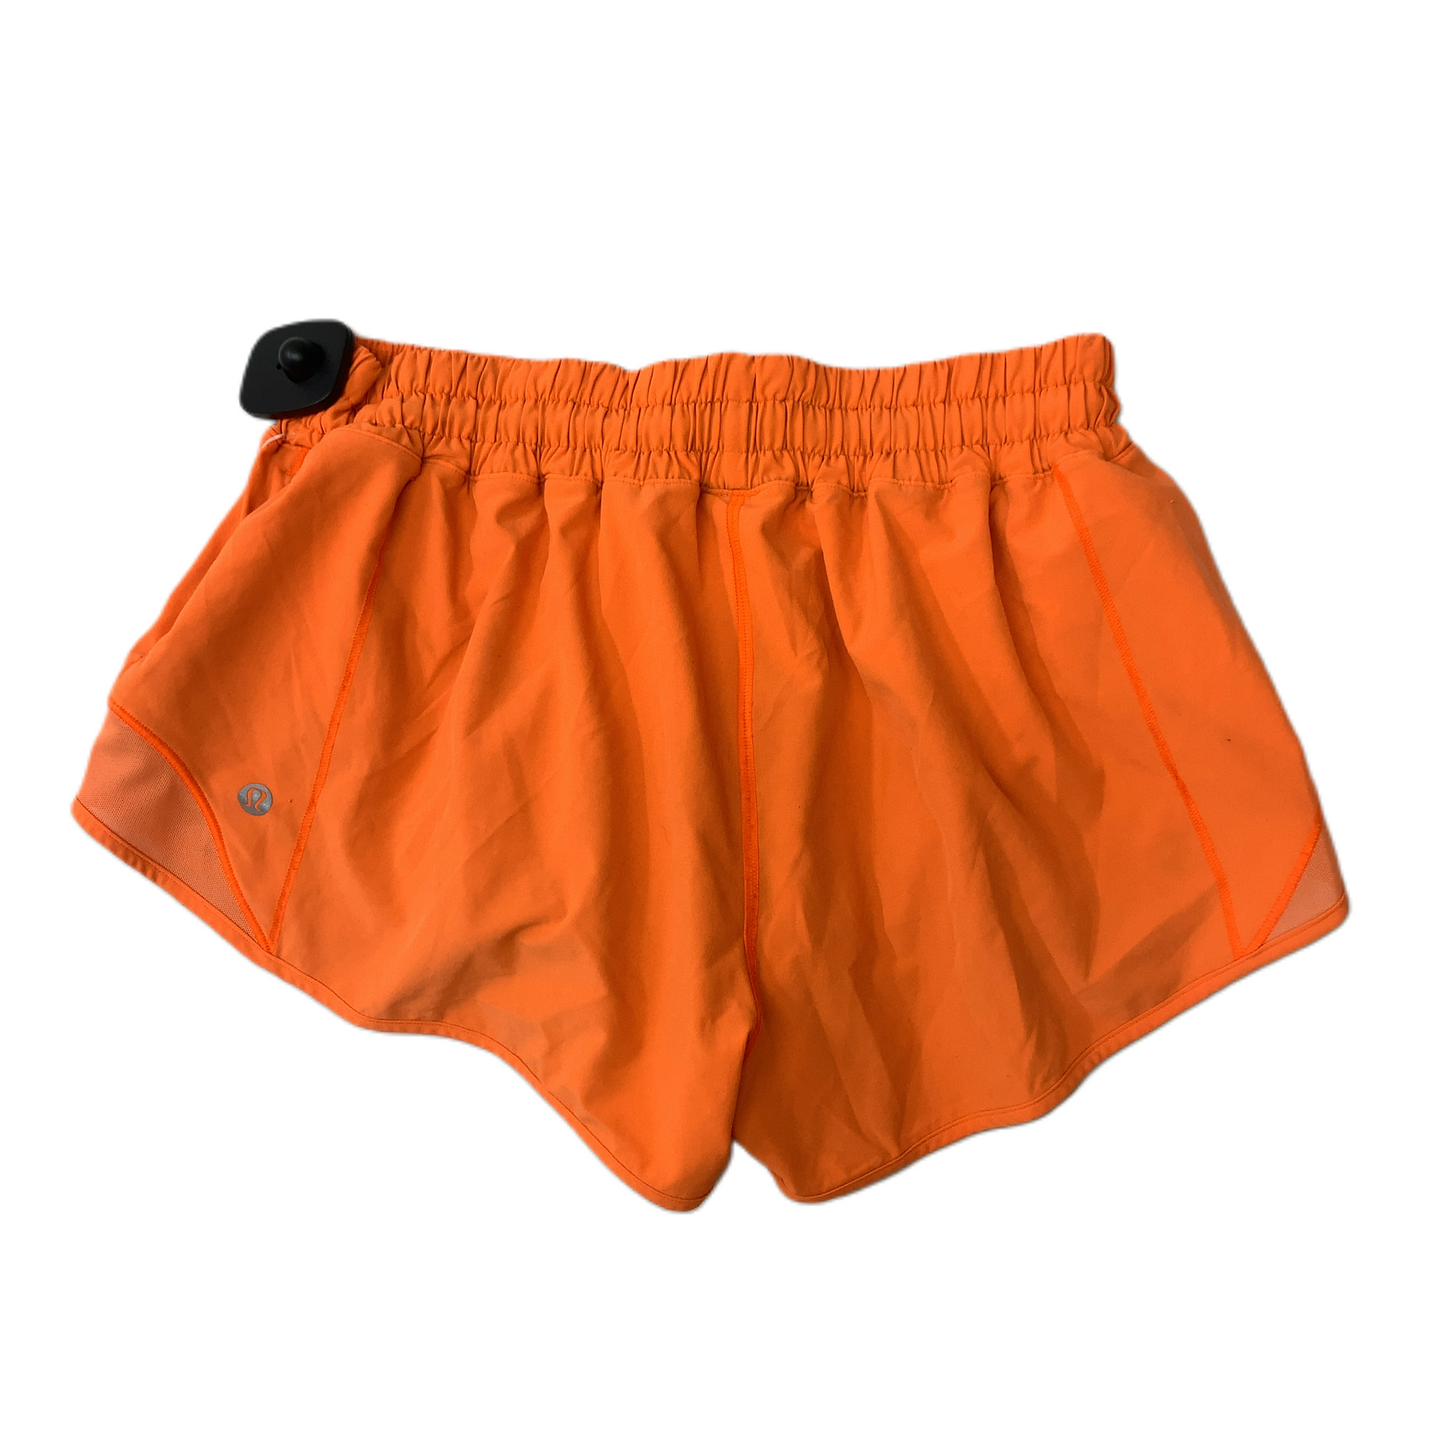 Orange  Athletic Shorts By Lululemon  Size: Xs